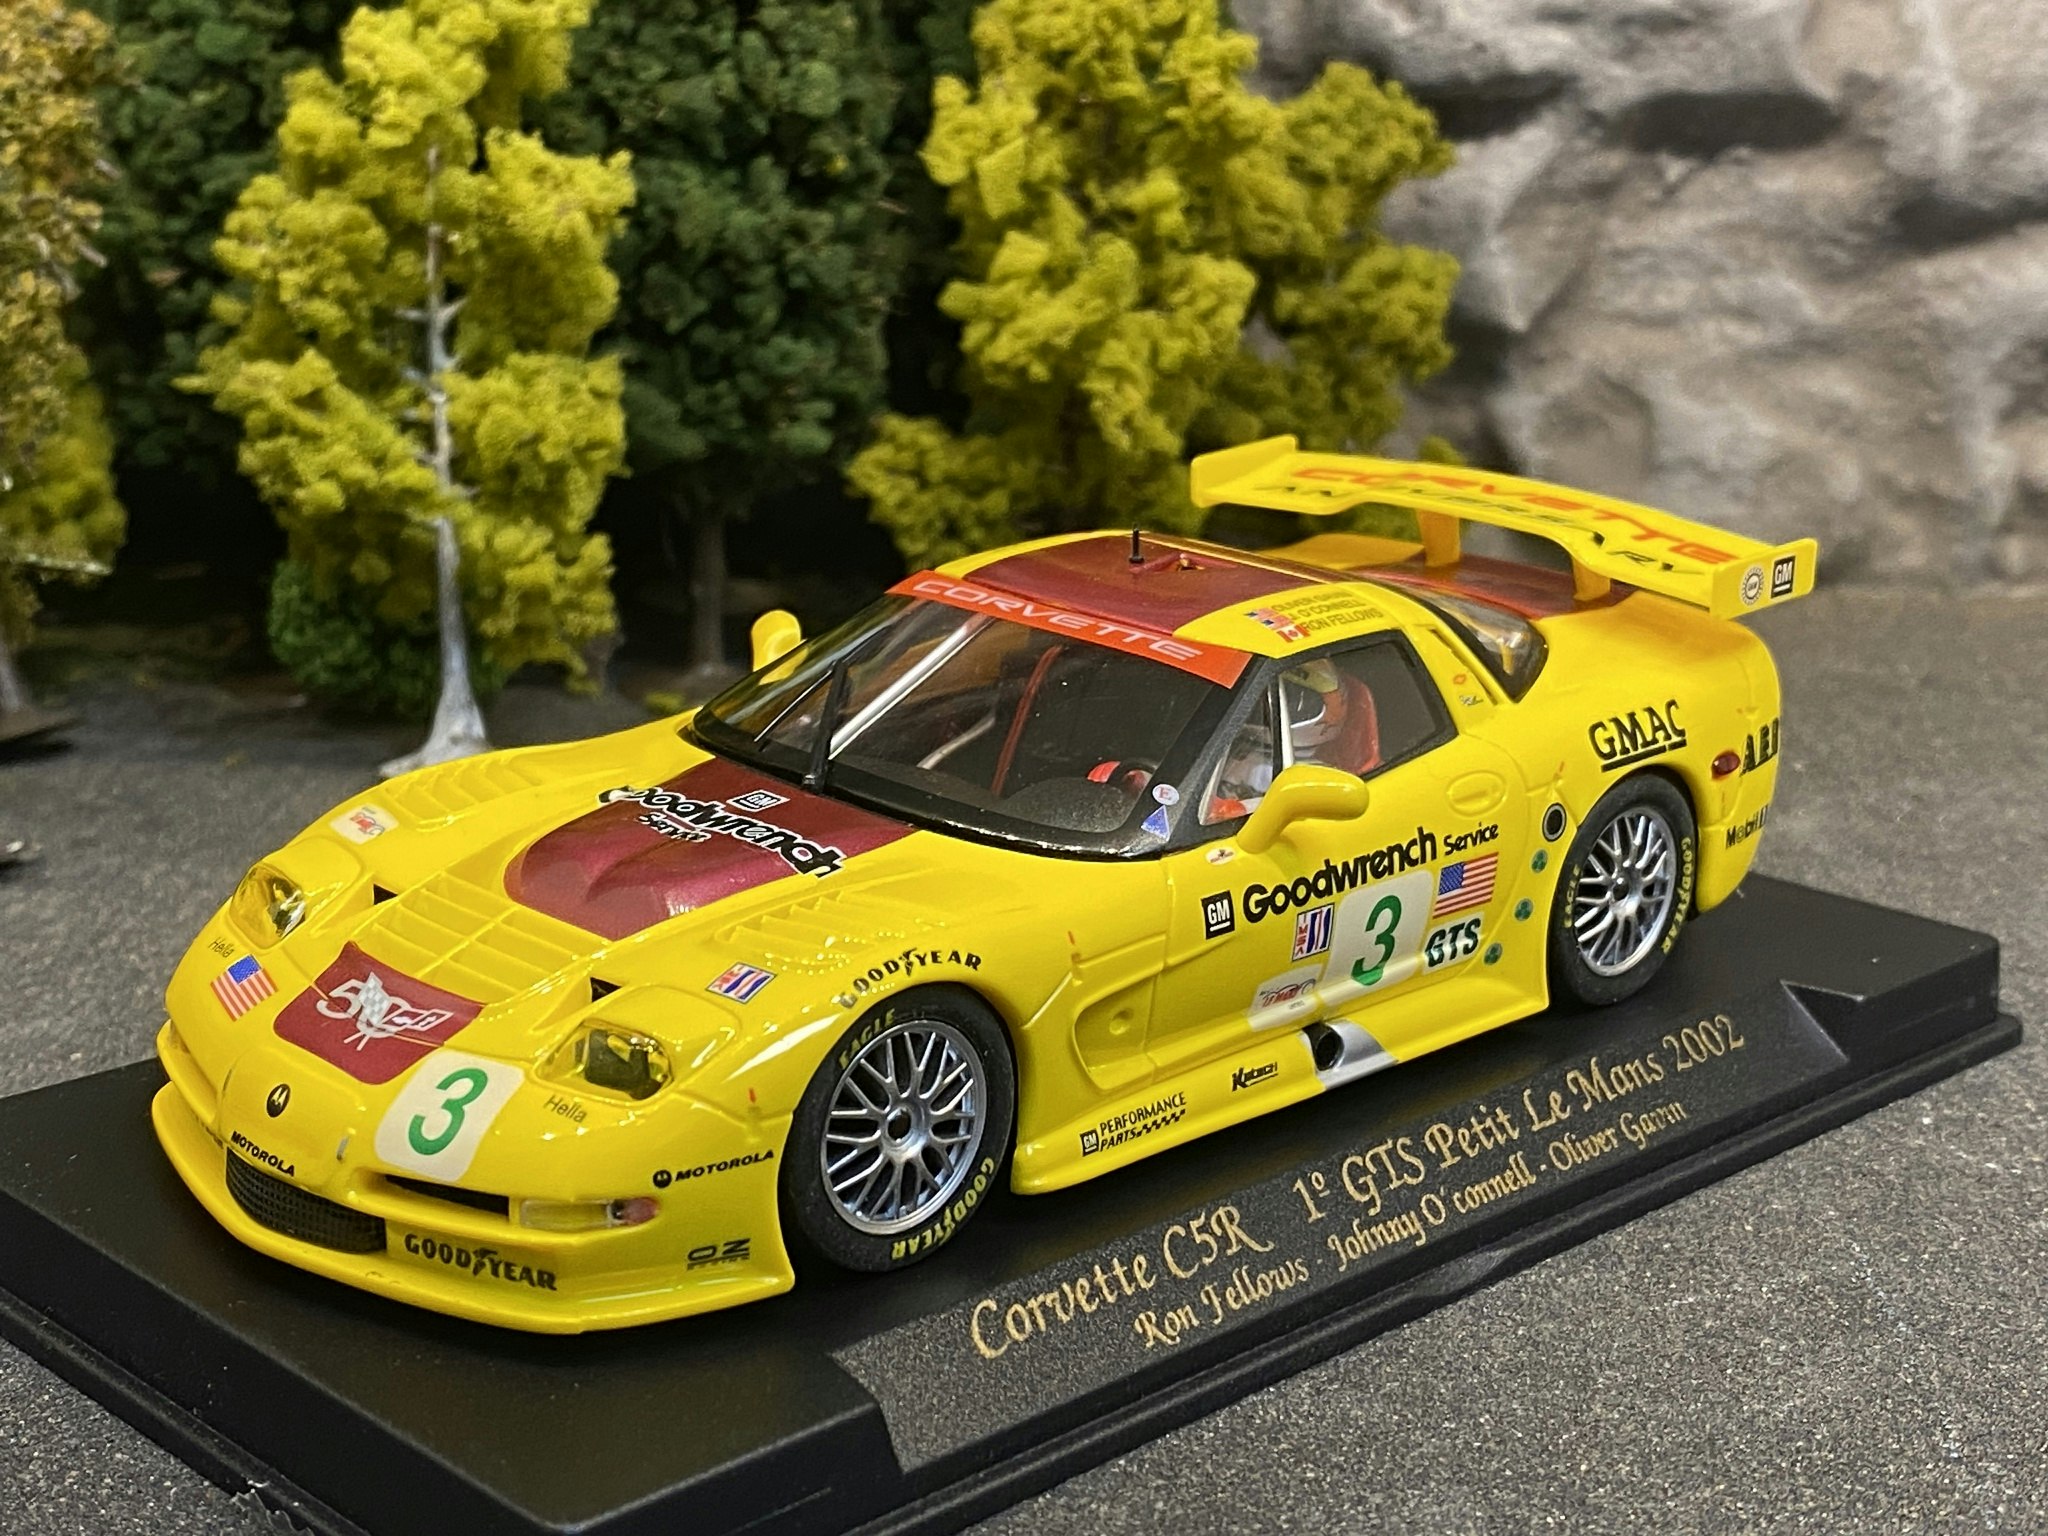 Scale 1/32 Analogue FLY slotcar: Chevrolet Corvette C5R, #3, 1st Petit Le Mans 2002